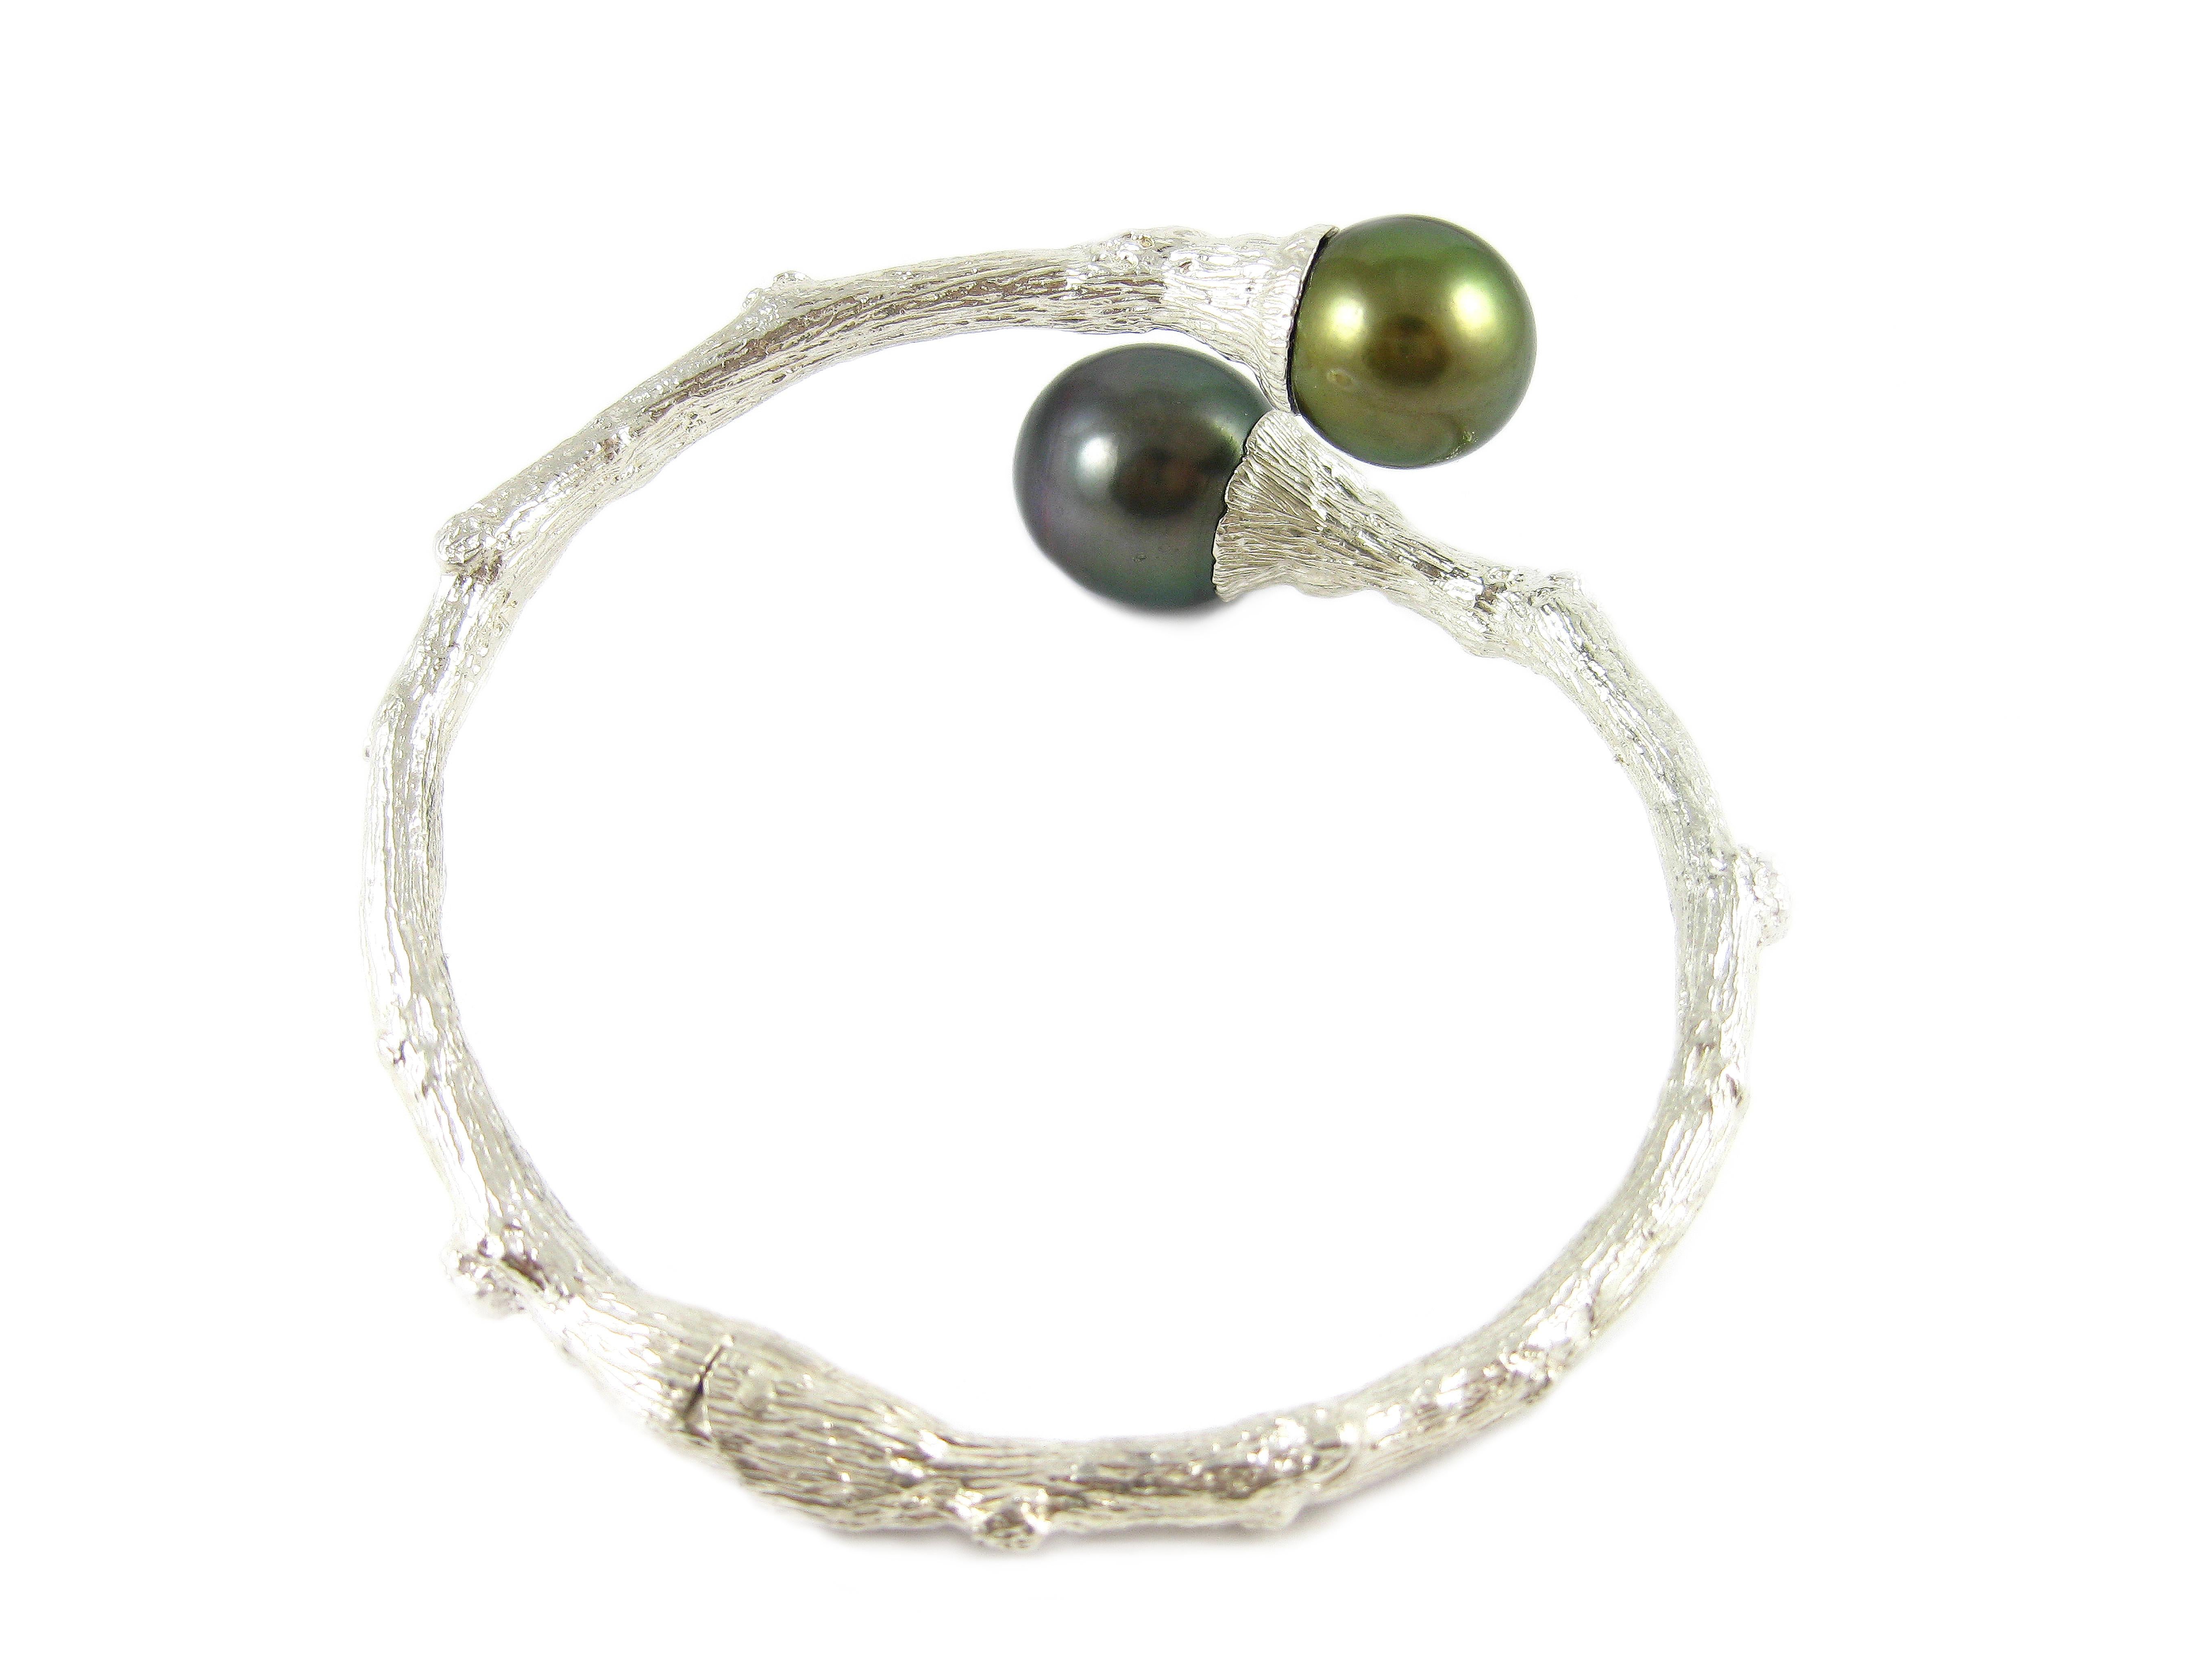 En s'inspirant de l'éternel arbre de vie, l'esprit organique de K. Brunini est capturé par ce délicat bracelet artisanal en argent sterling texturé en forme de brindille, coiffé de perles de Tahiti.

Dans la collection Brindille, la nature côtoie